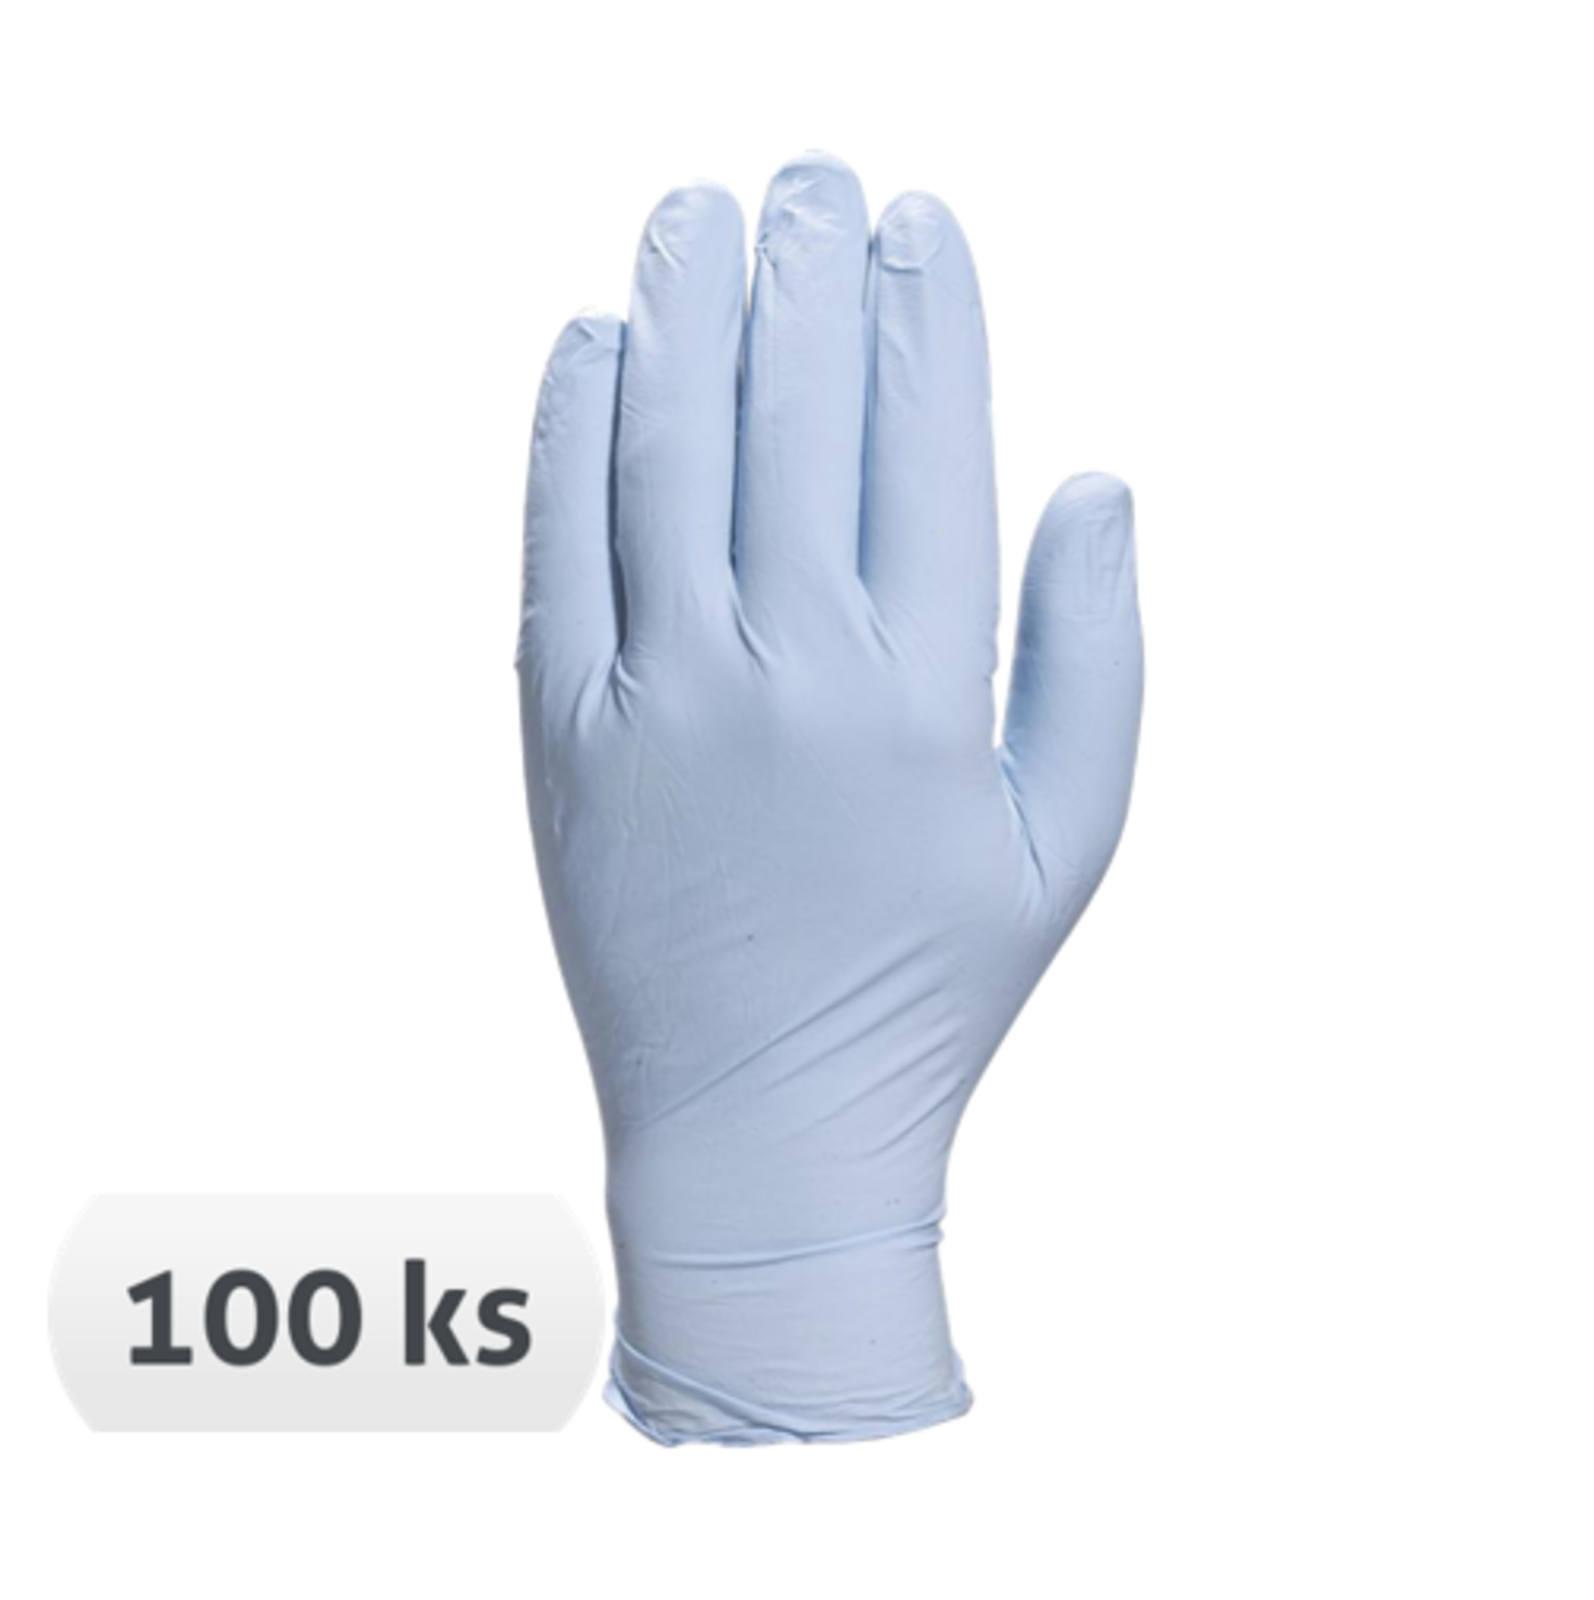 Jednorazové nitrilové rukavice Venitactyl V1400B100 nepúdrované 100 ks - veľkosť: 9/10, farba: modrá